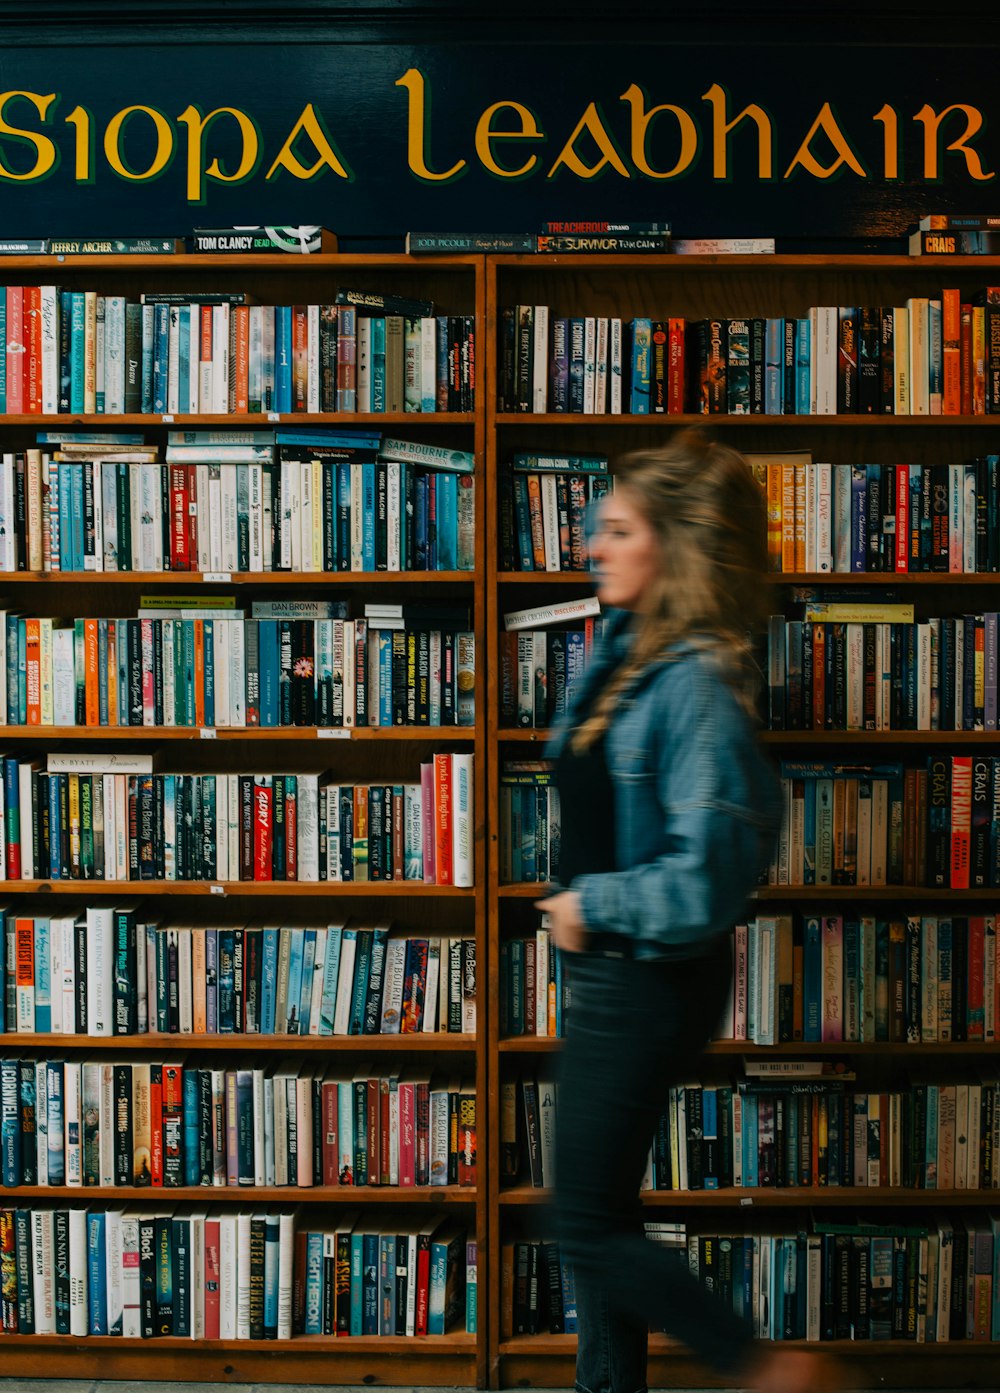 Una mujer pasando junto a un estante de libros lleno de libros